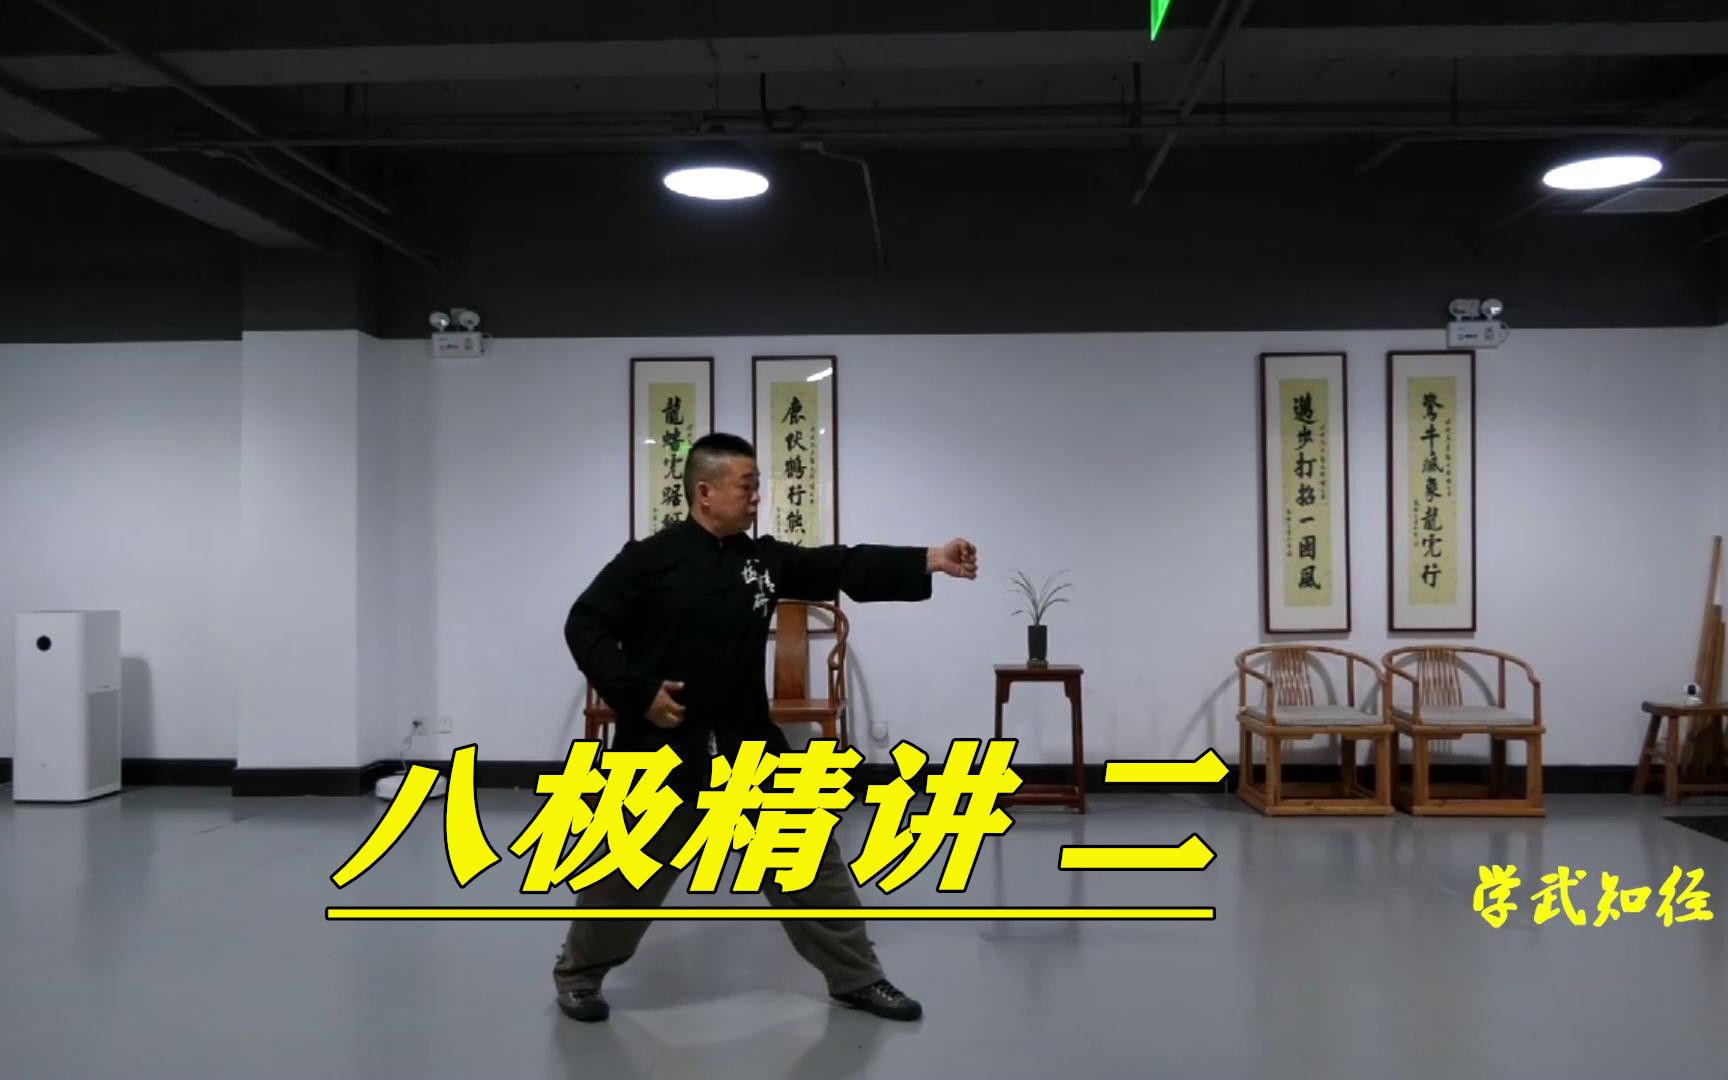 八极拳两仪顶实战技法理念,胡玉涛老师讲述武术独特风采